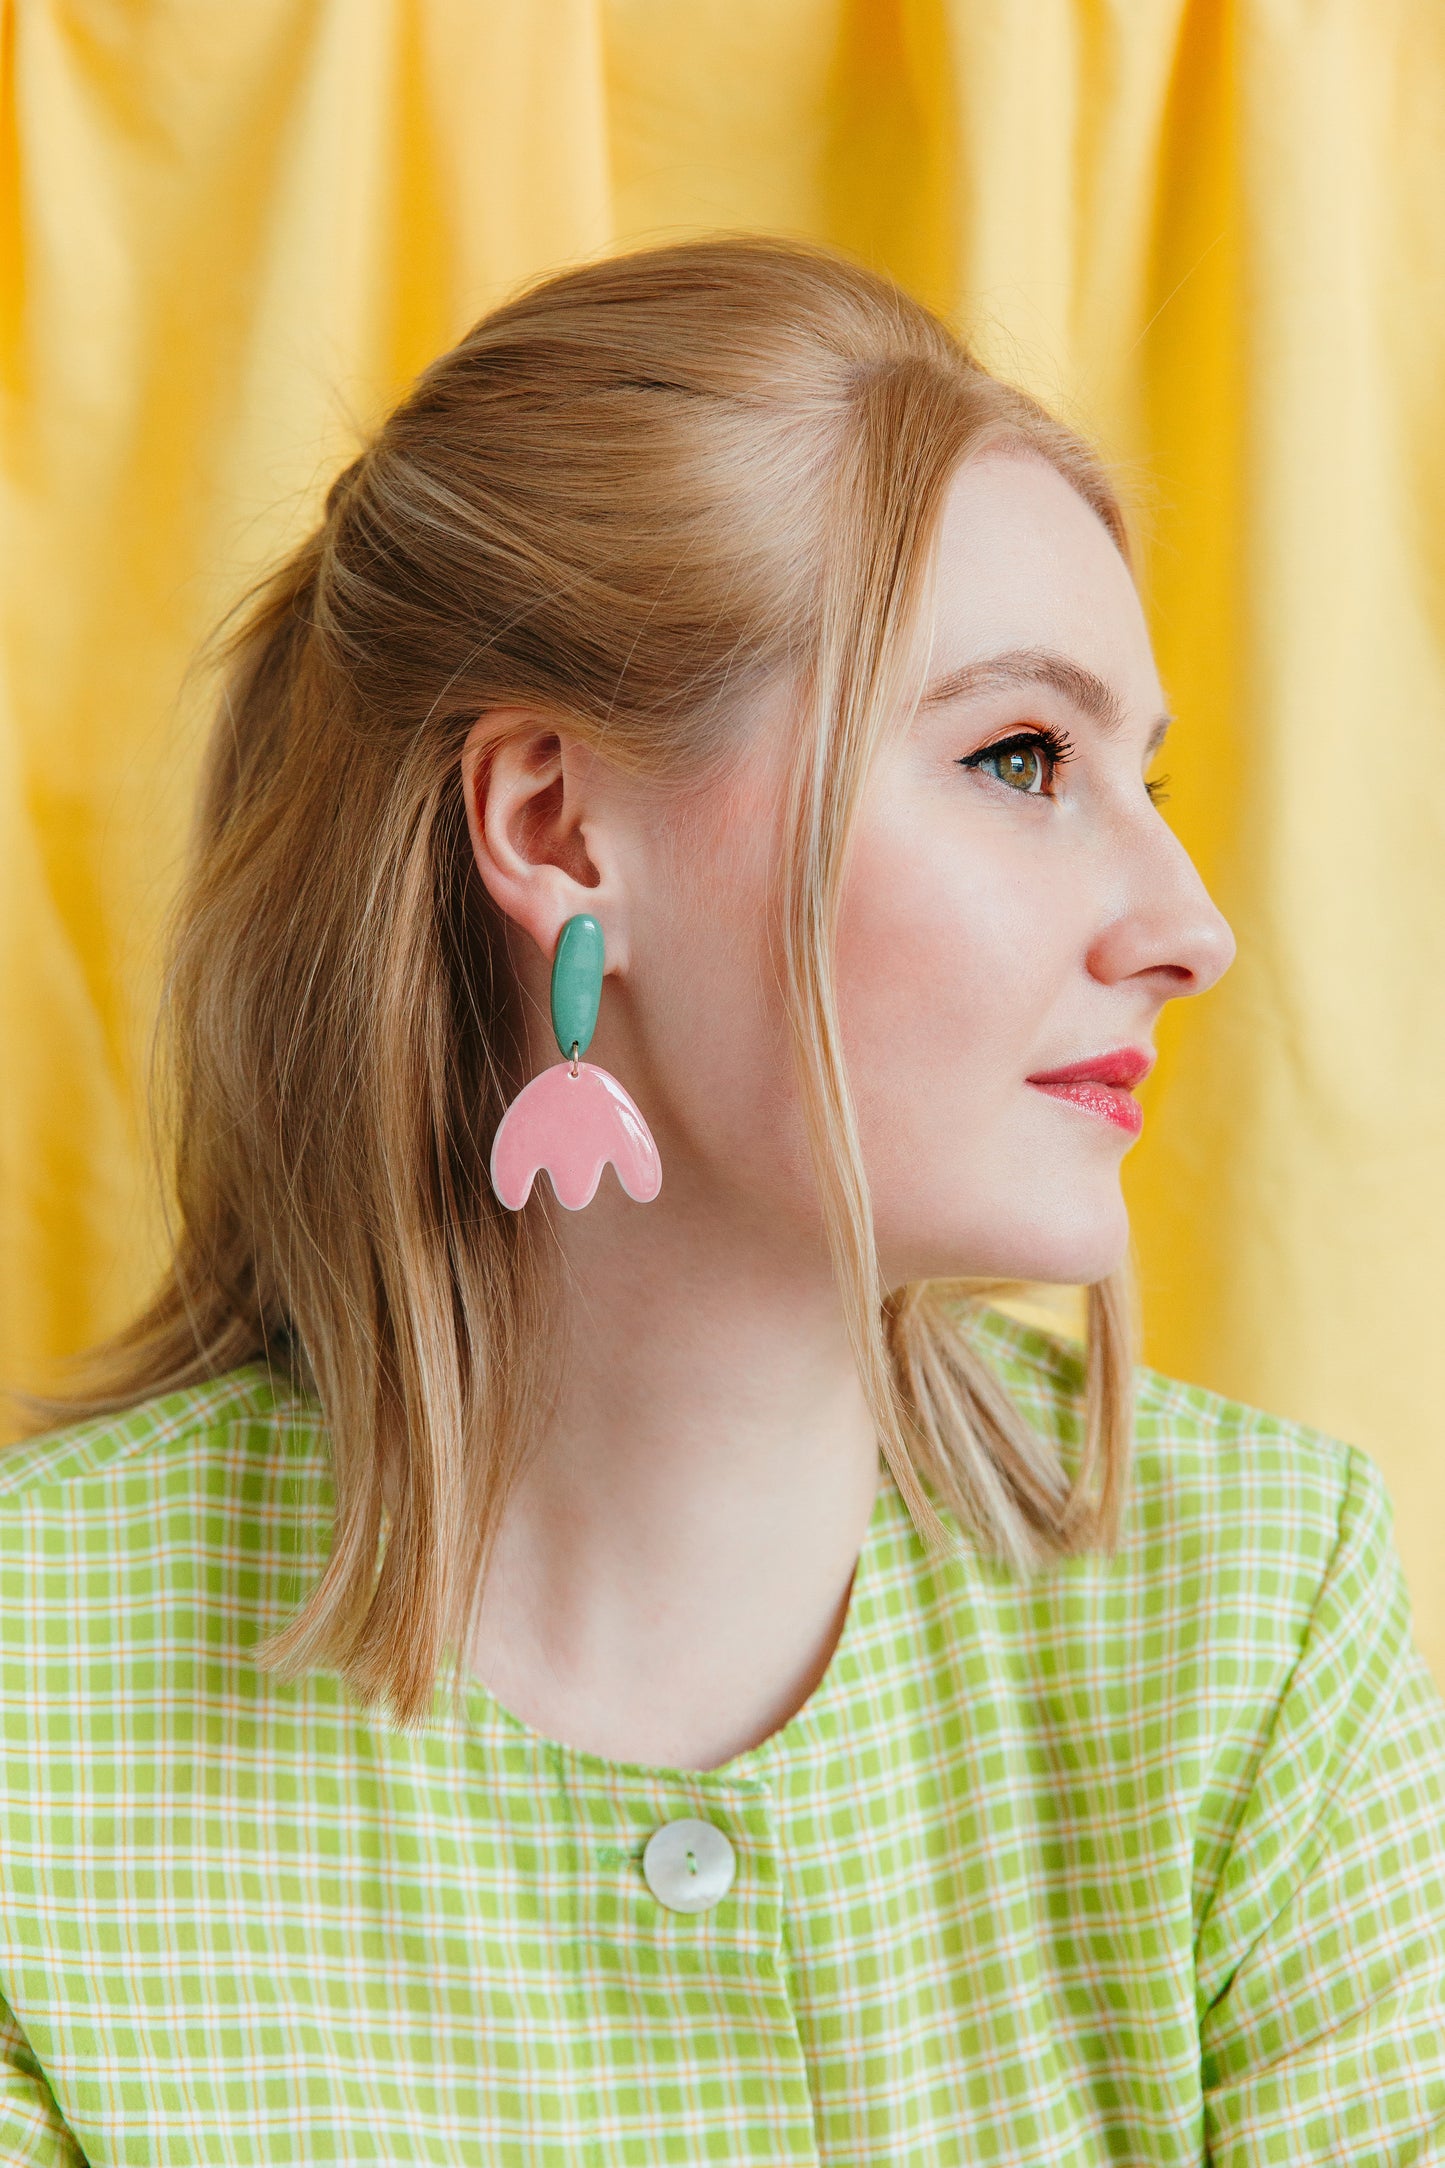 Tulip Earrings in Pink/Green